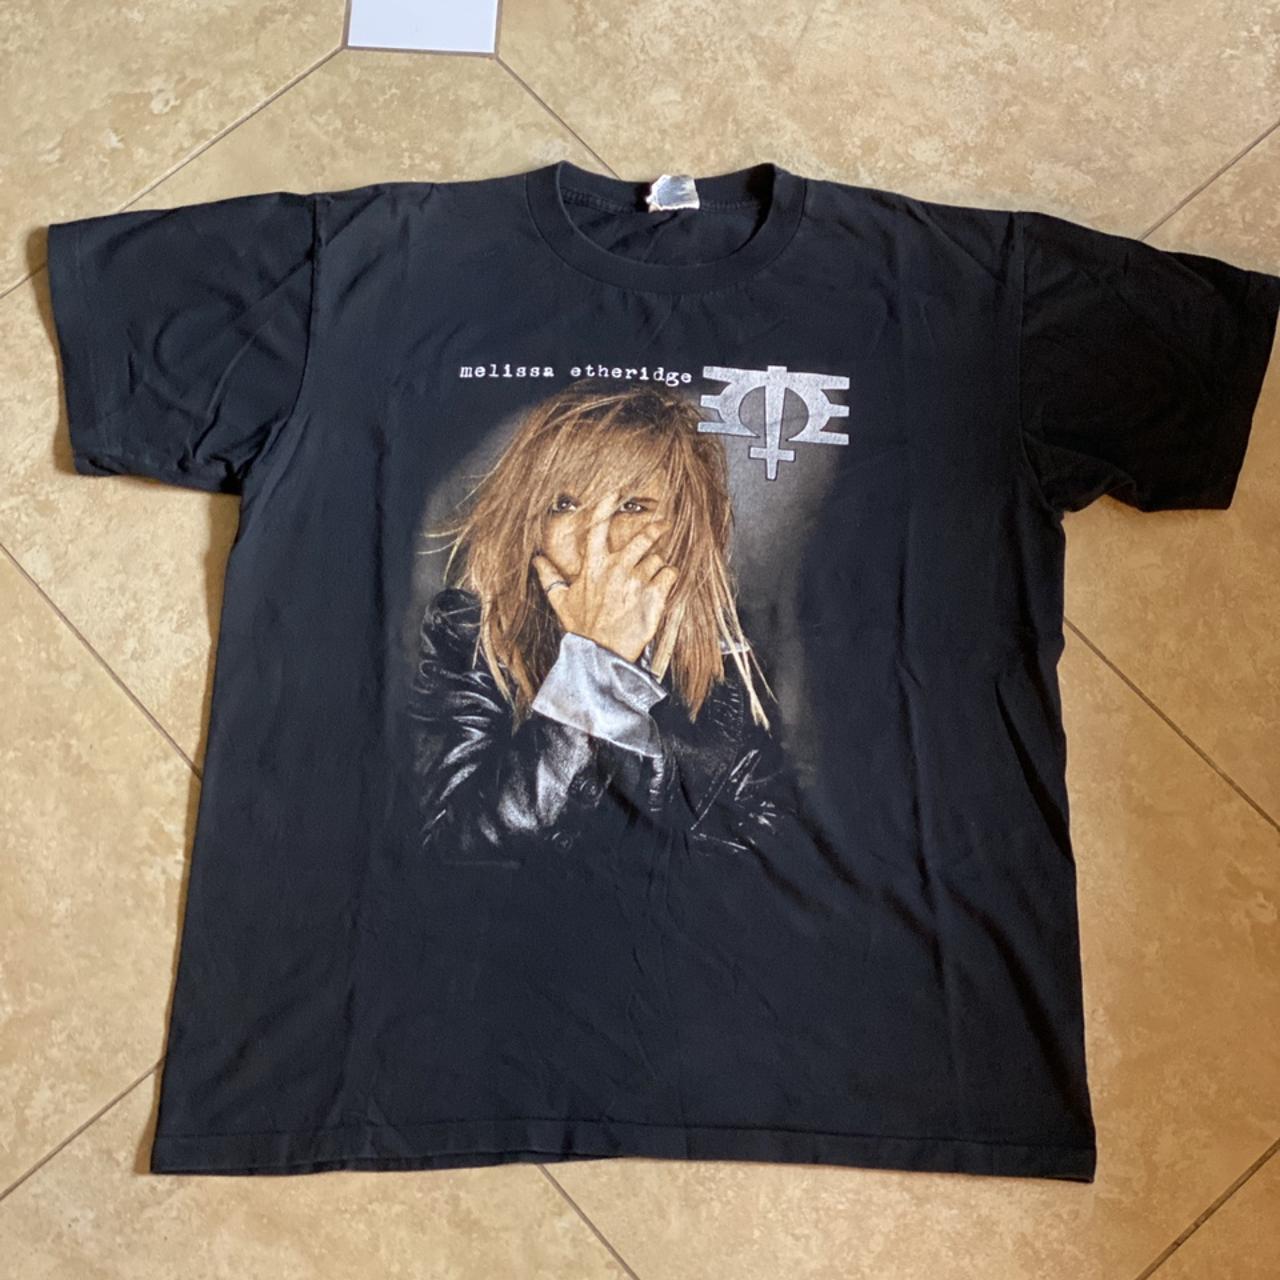 Vintage 1996 Melissa Etheridge T-Shirt tagged... - Depop